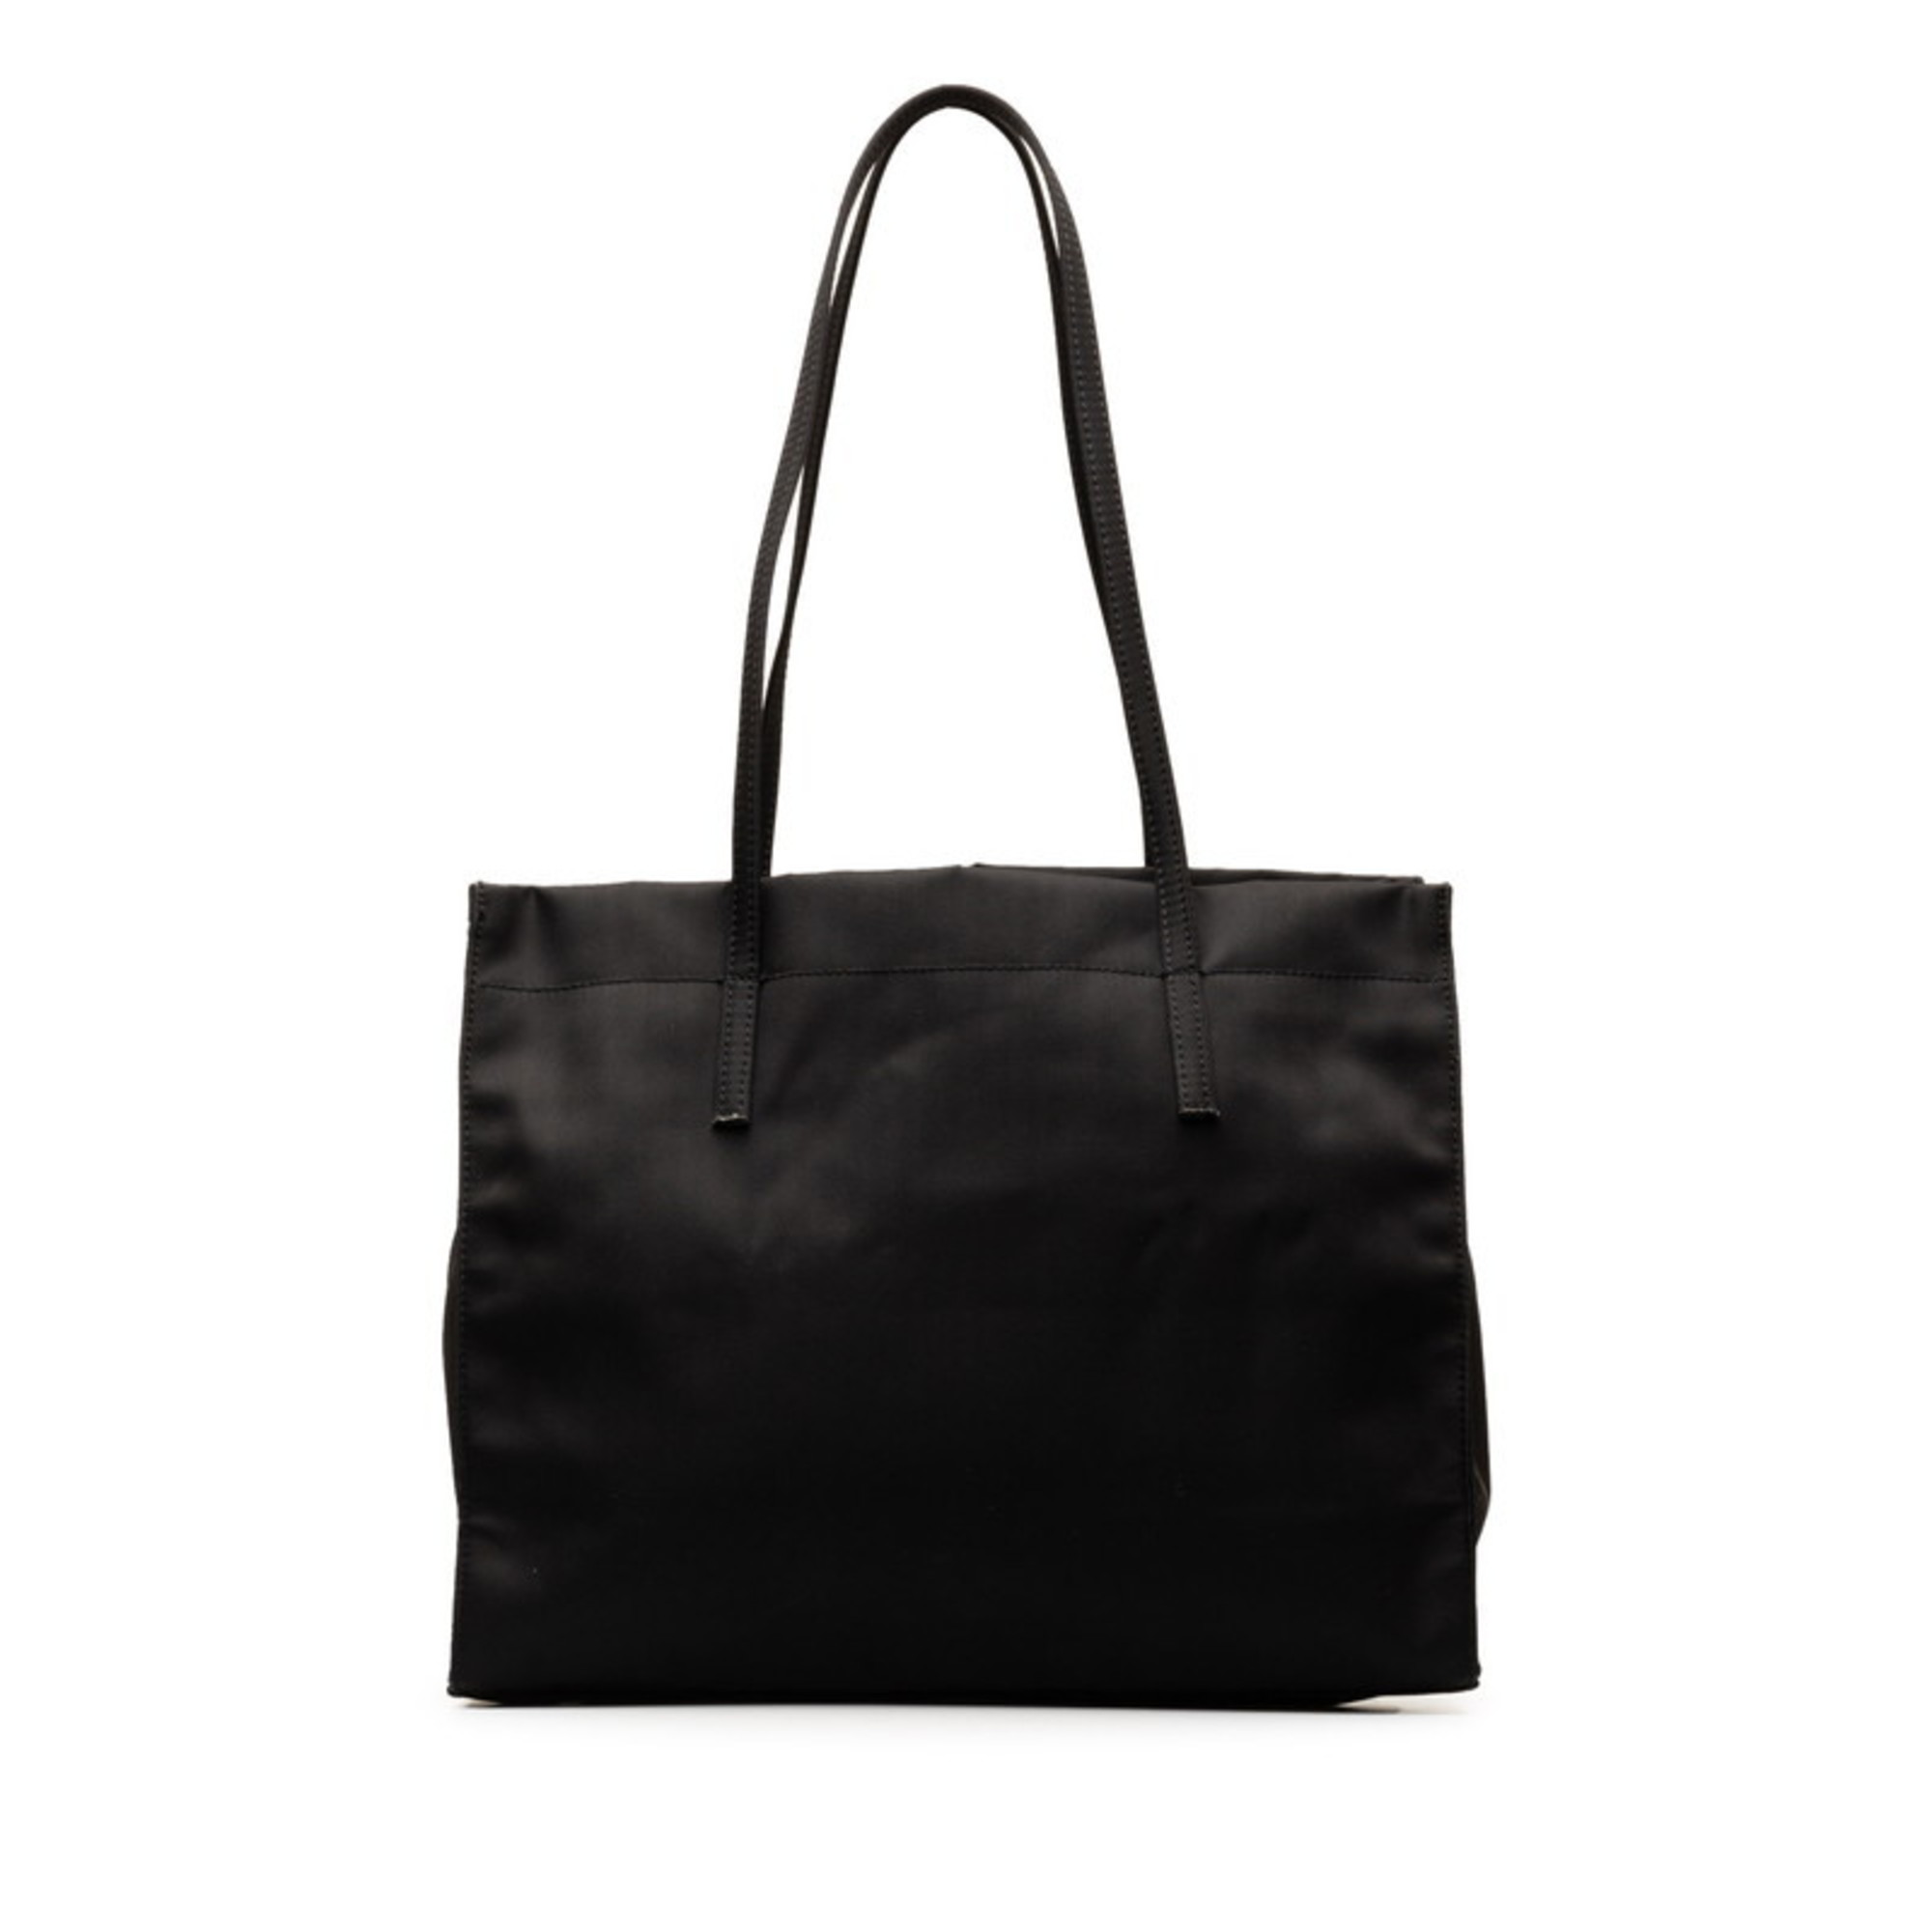 FENDI handbag tote bag black nylon women's